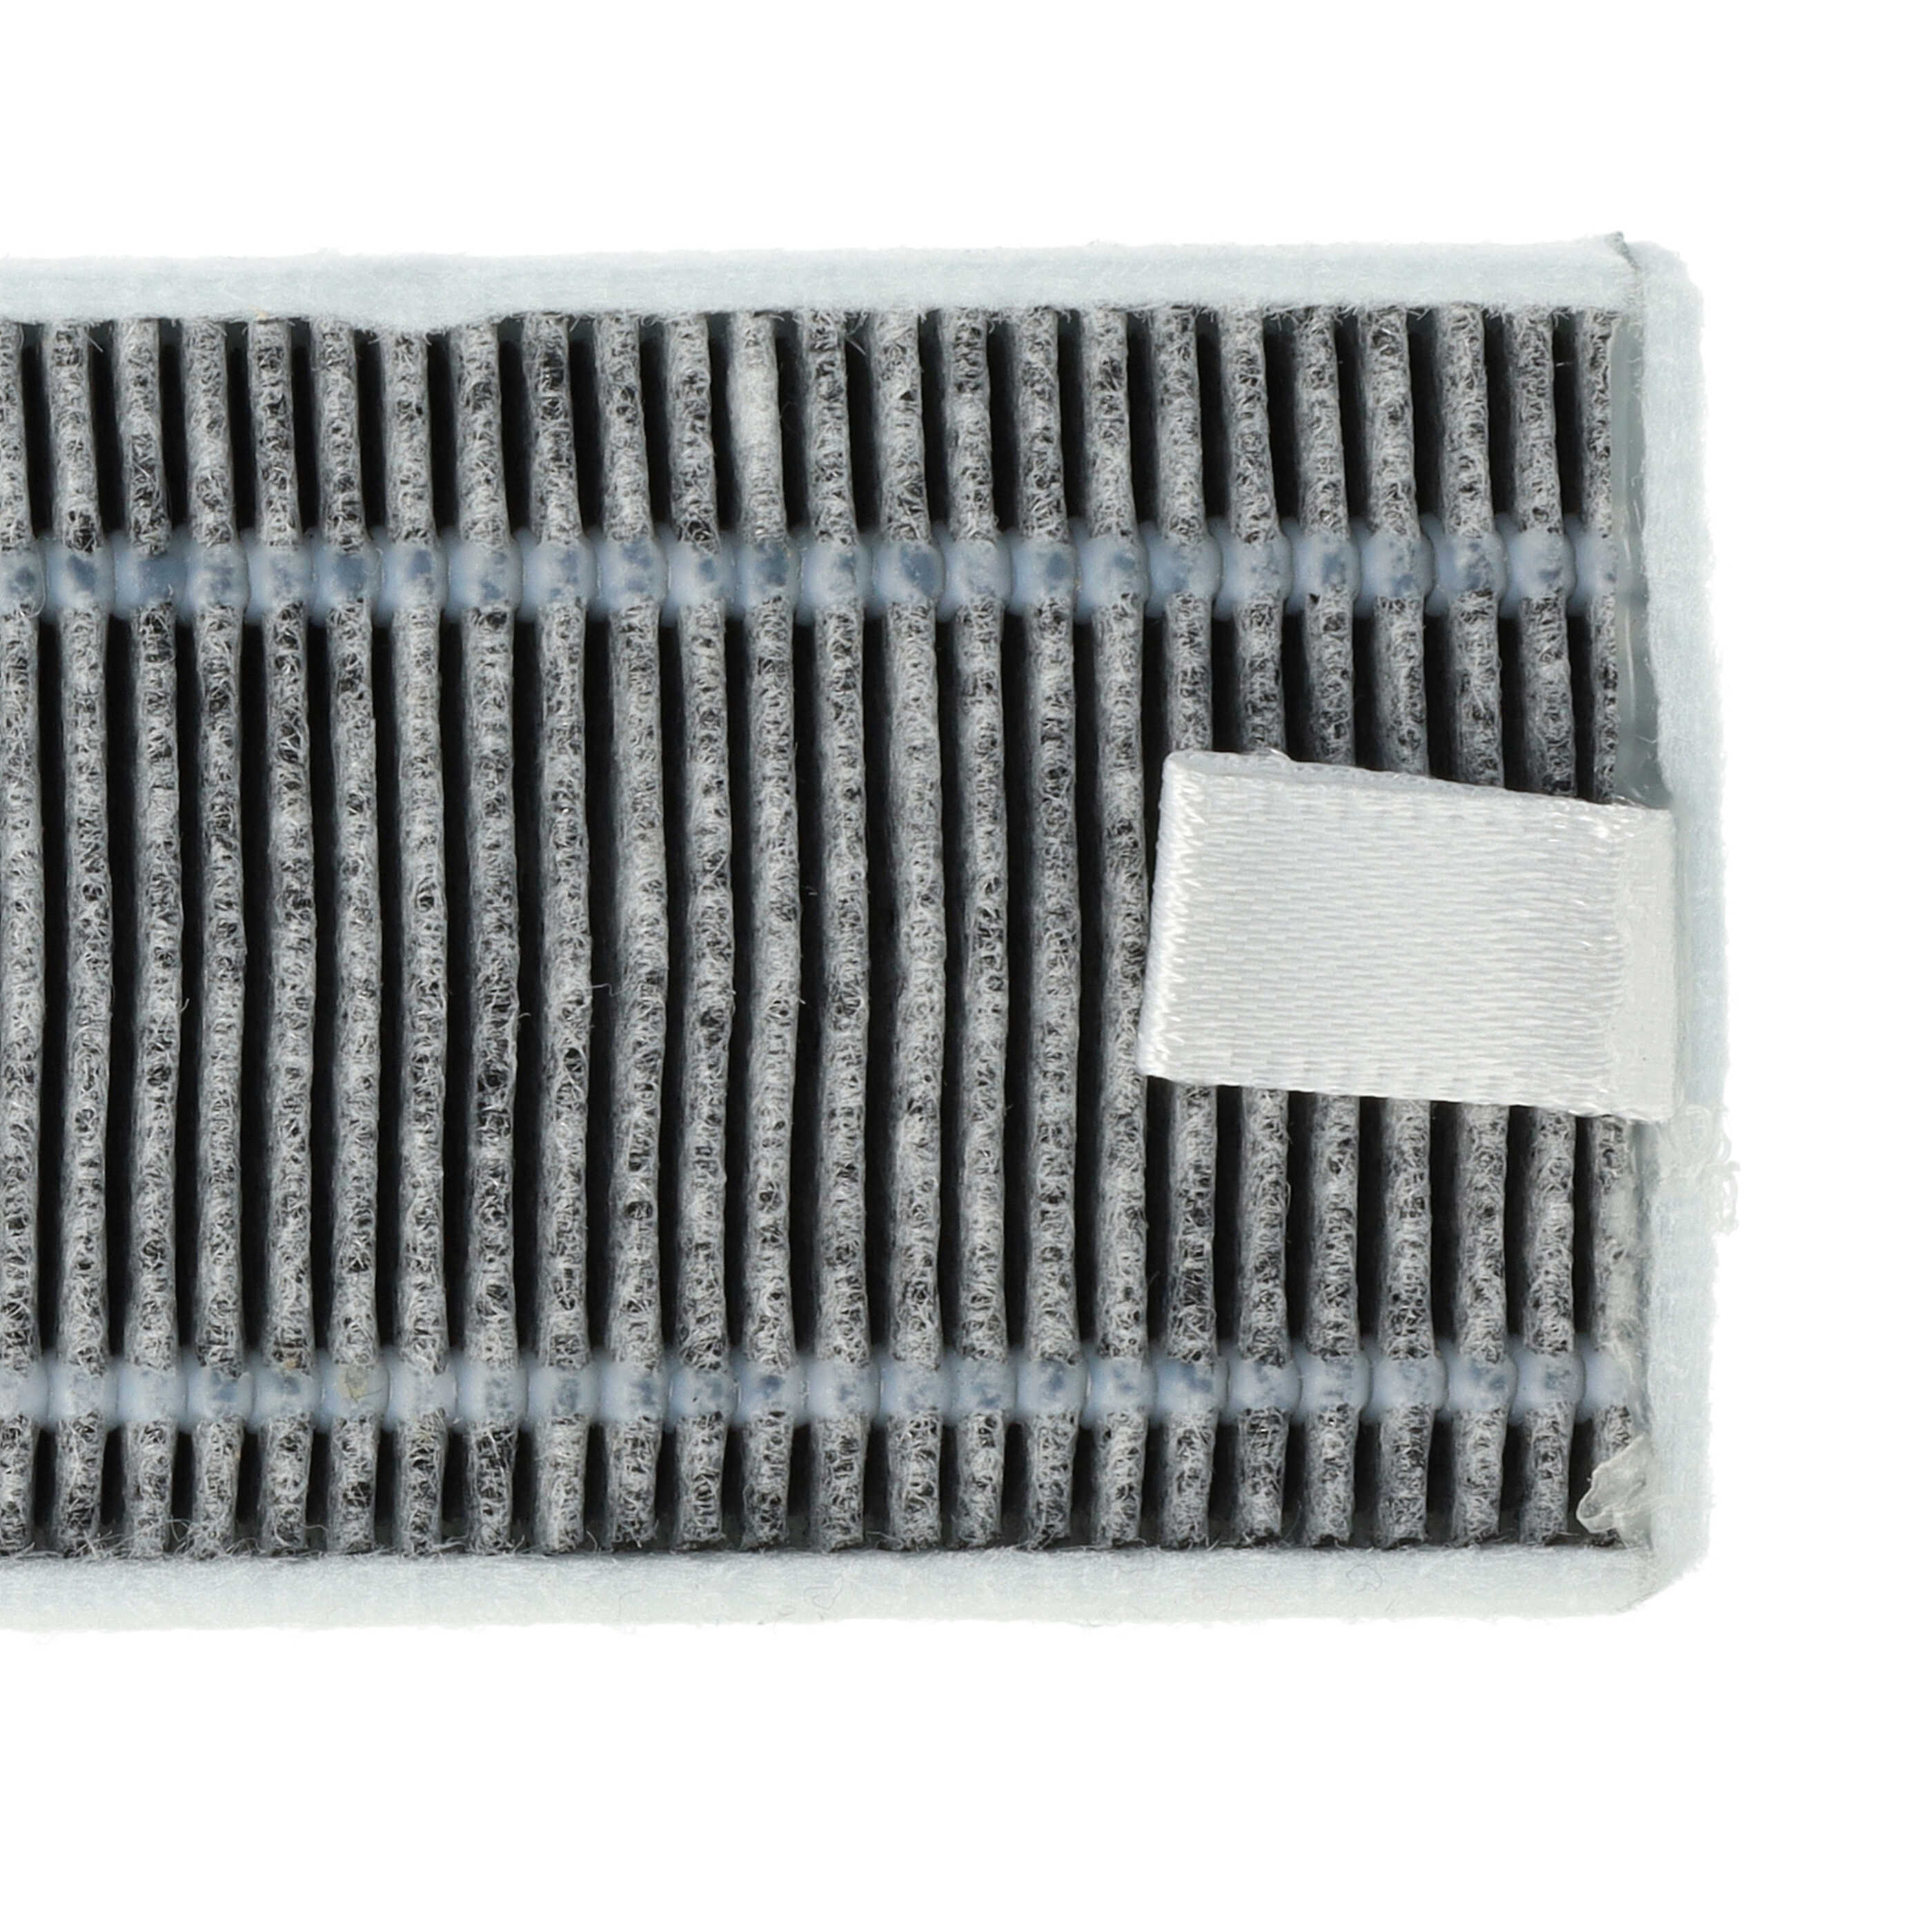 Filtre à charbon actif pour robot aspirateur Proscenic, Cecotec, Xiaomi M7 u.a. - 13 x 4 x 1 cm